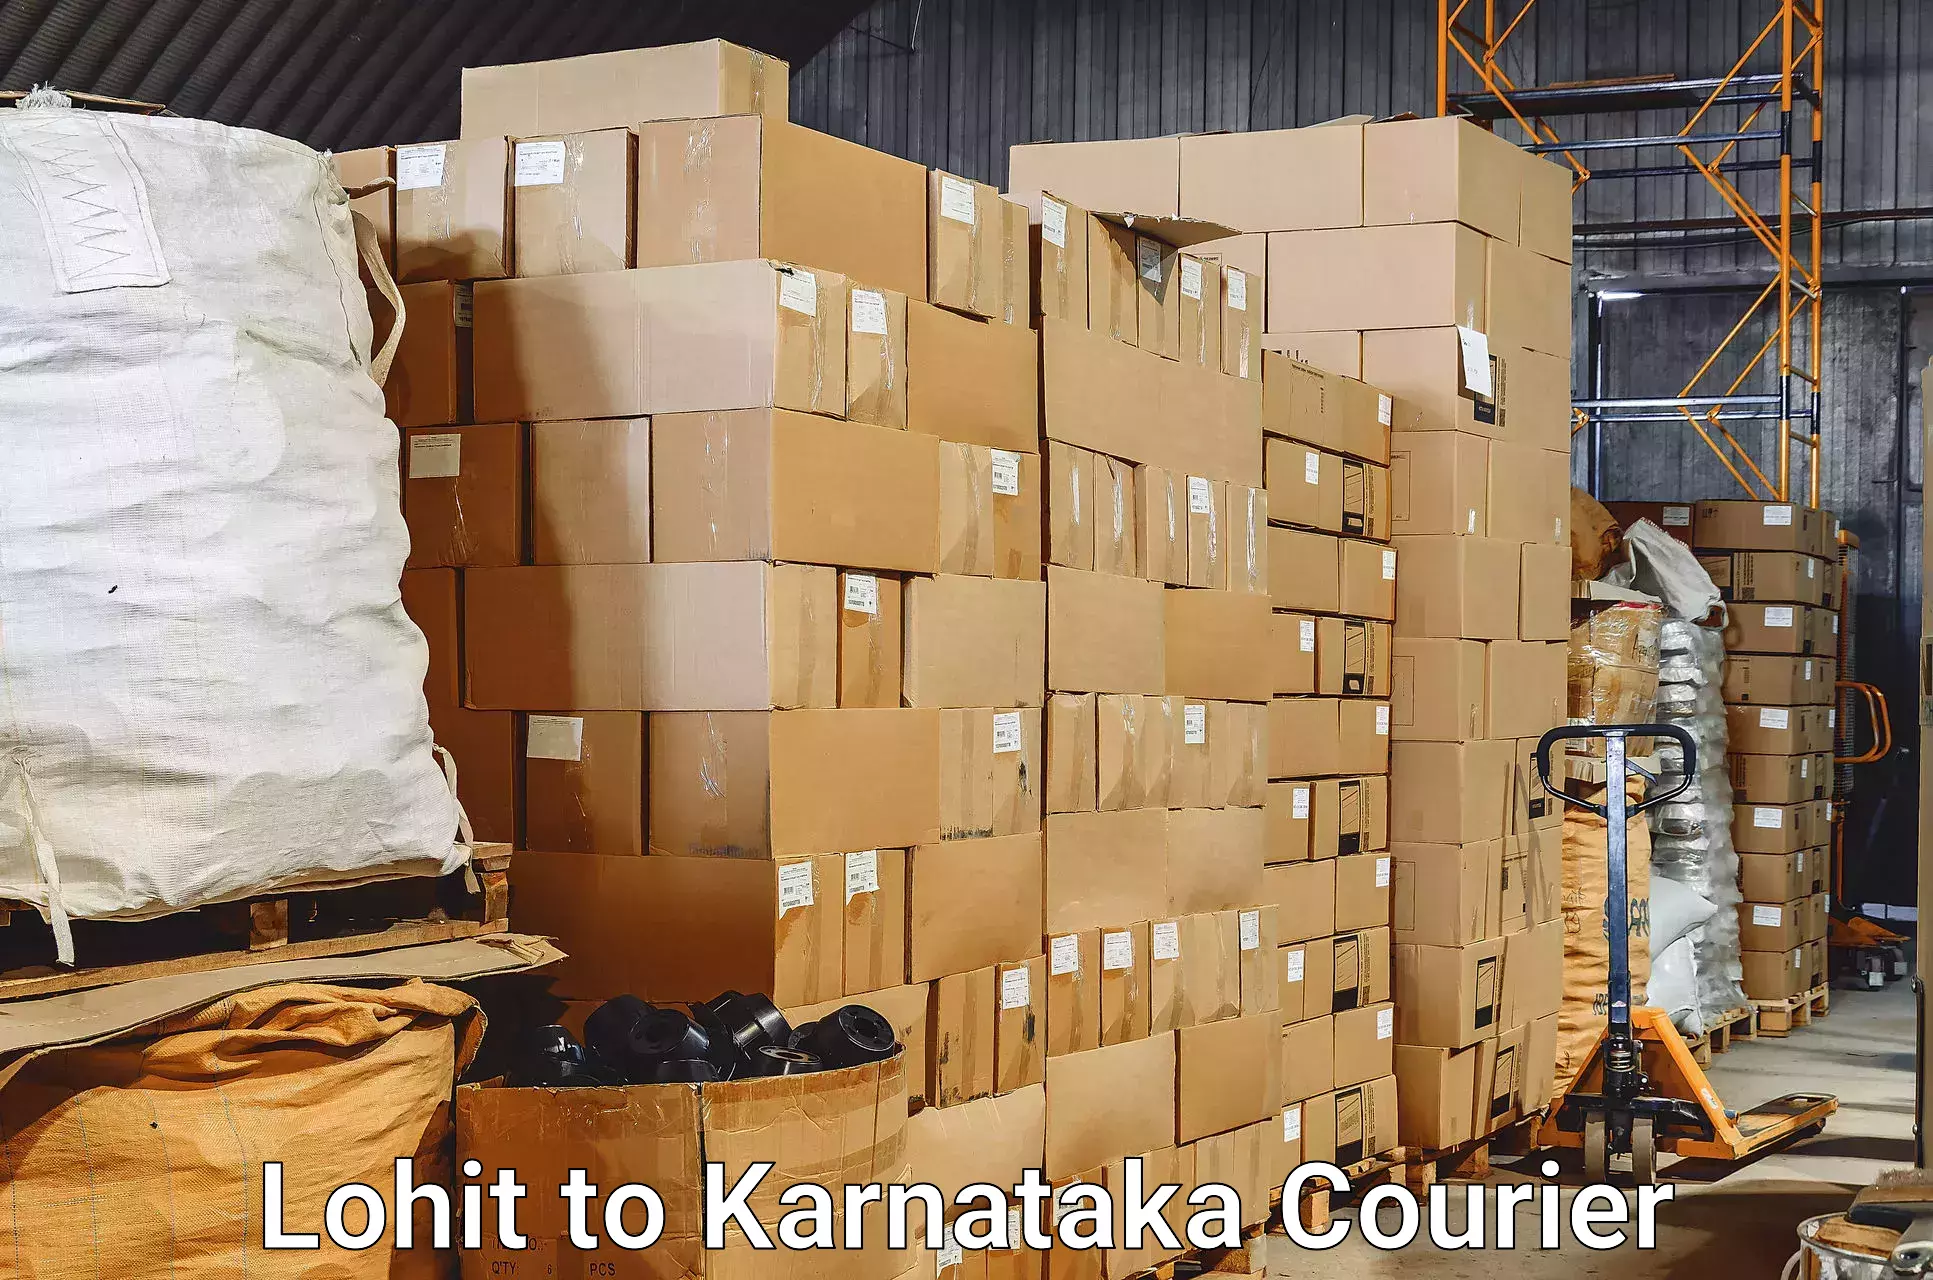 Electronic items luggage shipping in Lohit to Kanjarakatte